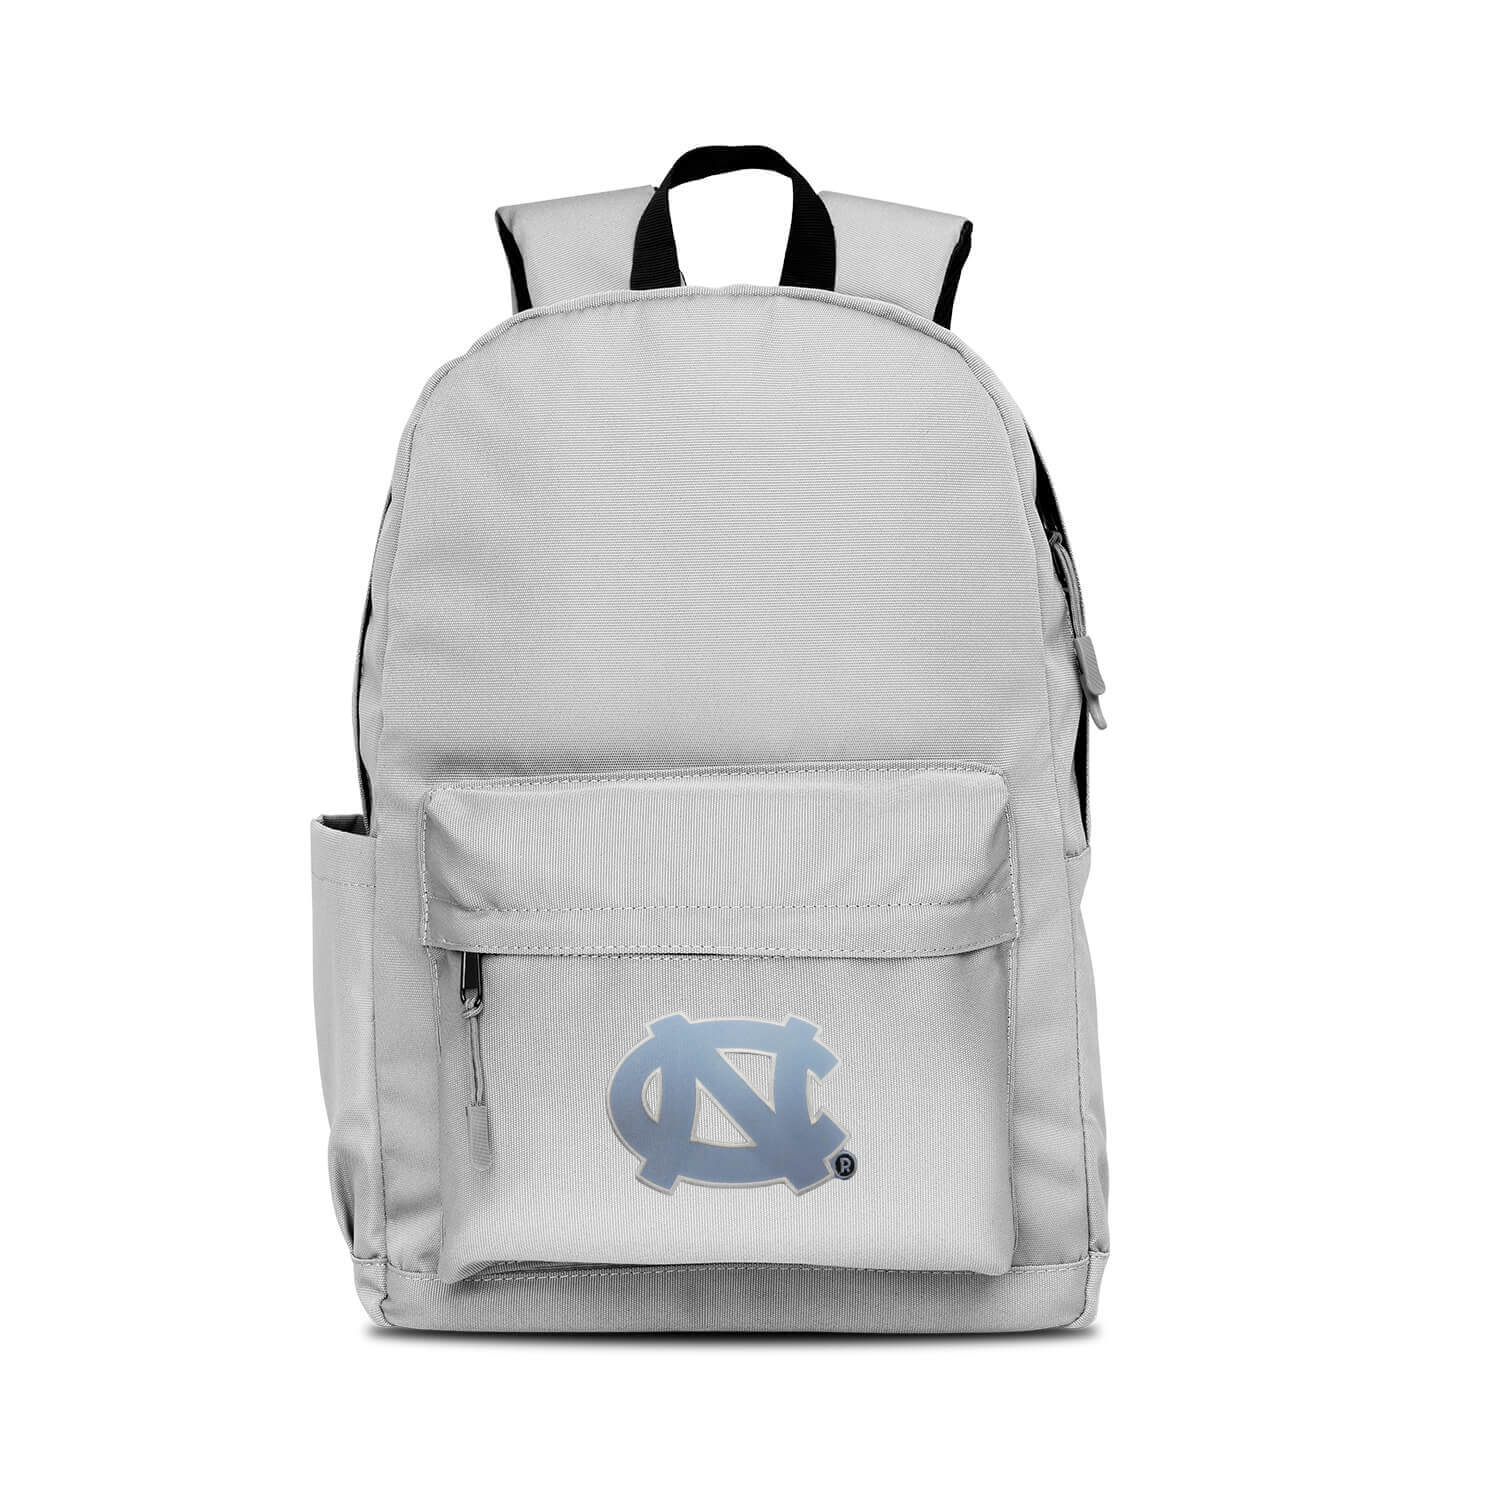 North Carolina Tar Heels L716 Campus Backpack Backpacks and Bags